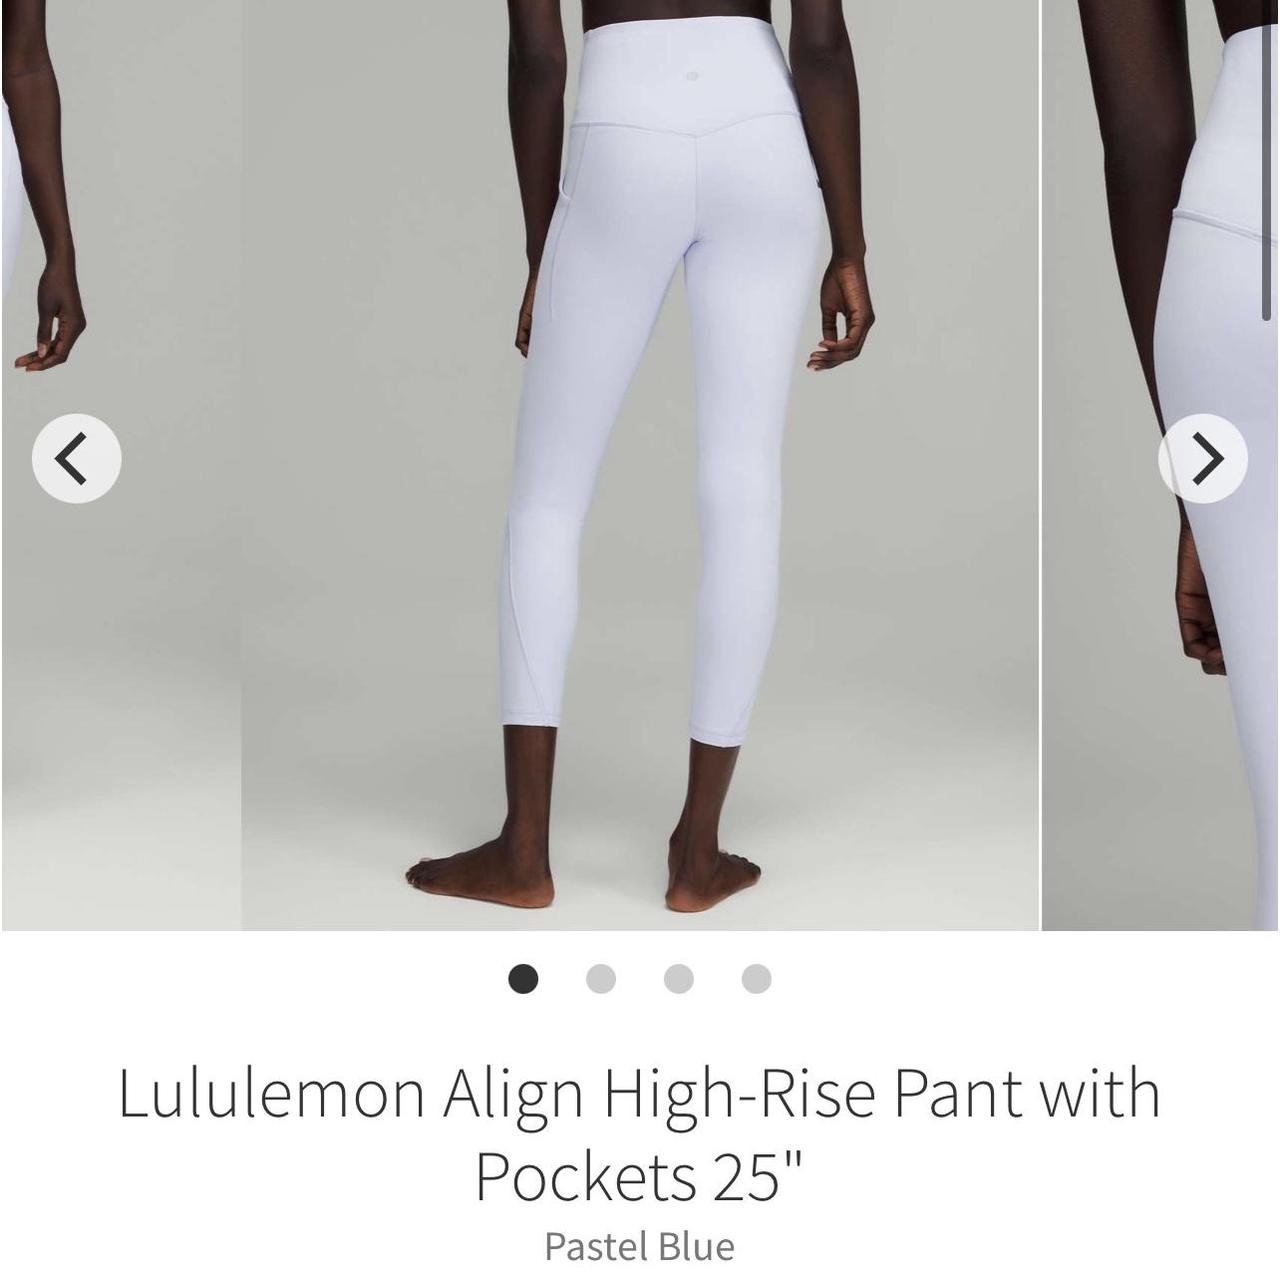 LULULEMON Align high-rise leggings - 25 with pockets